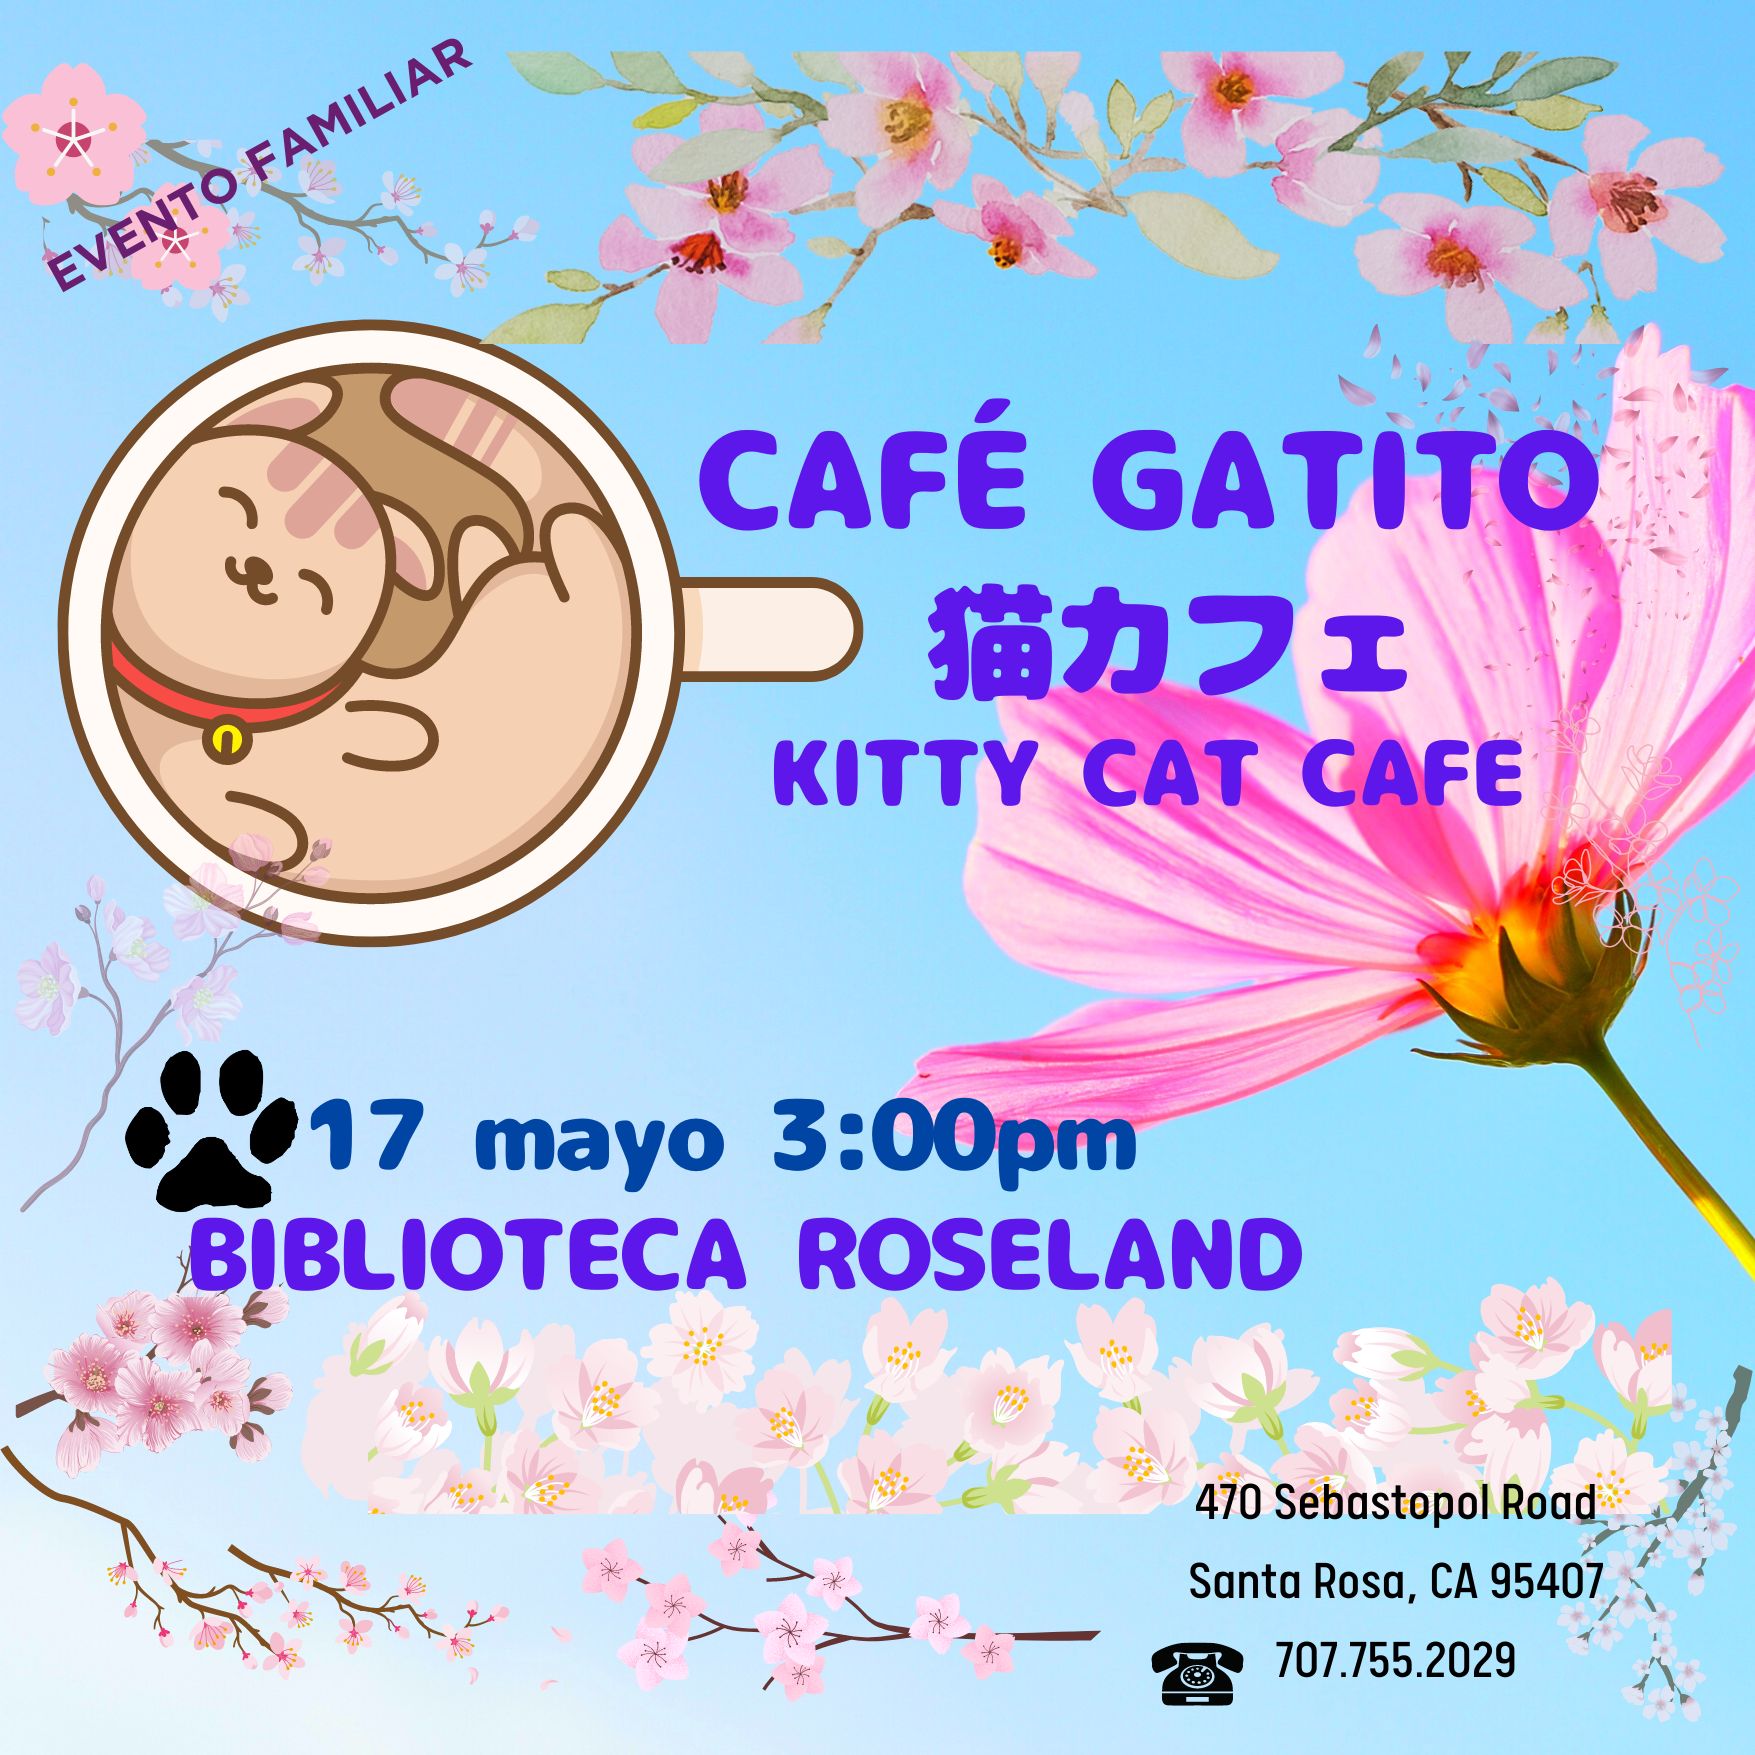 Cafe Gatito Kitty Cat Cafe